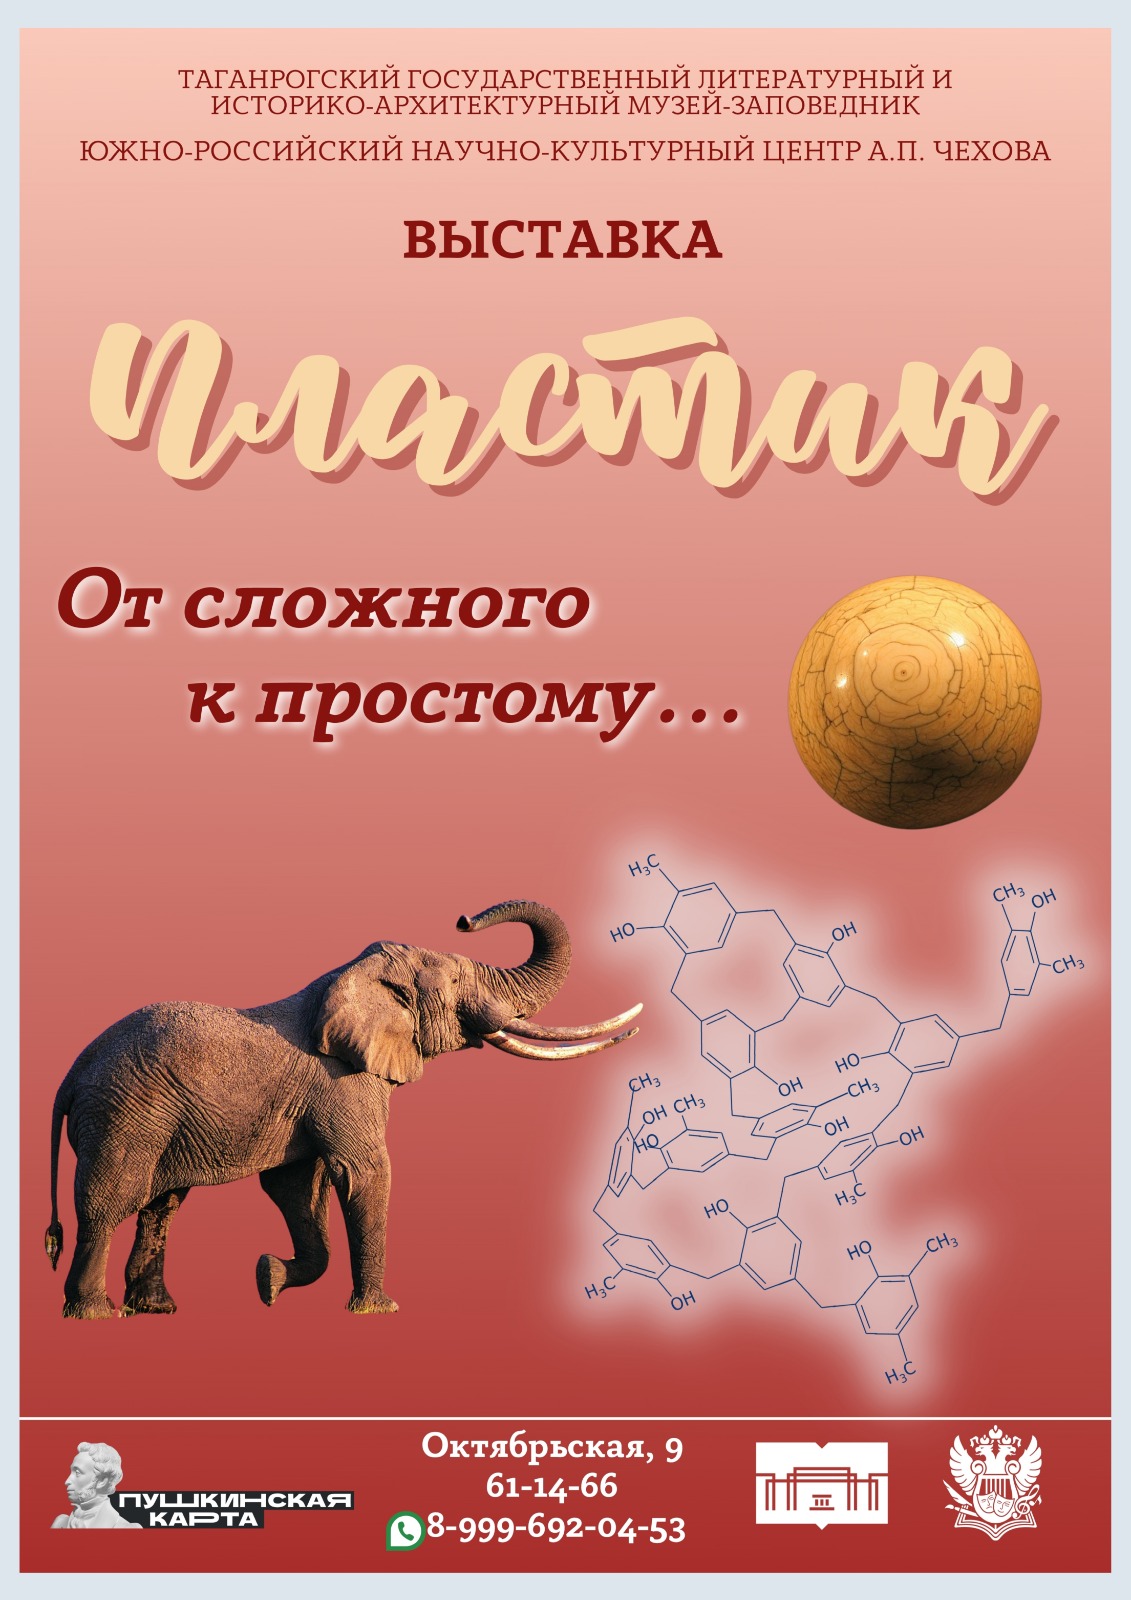 8 февраля отмечается День Российской науки